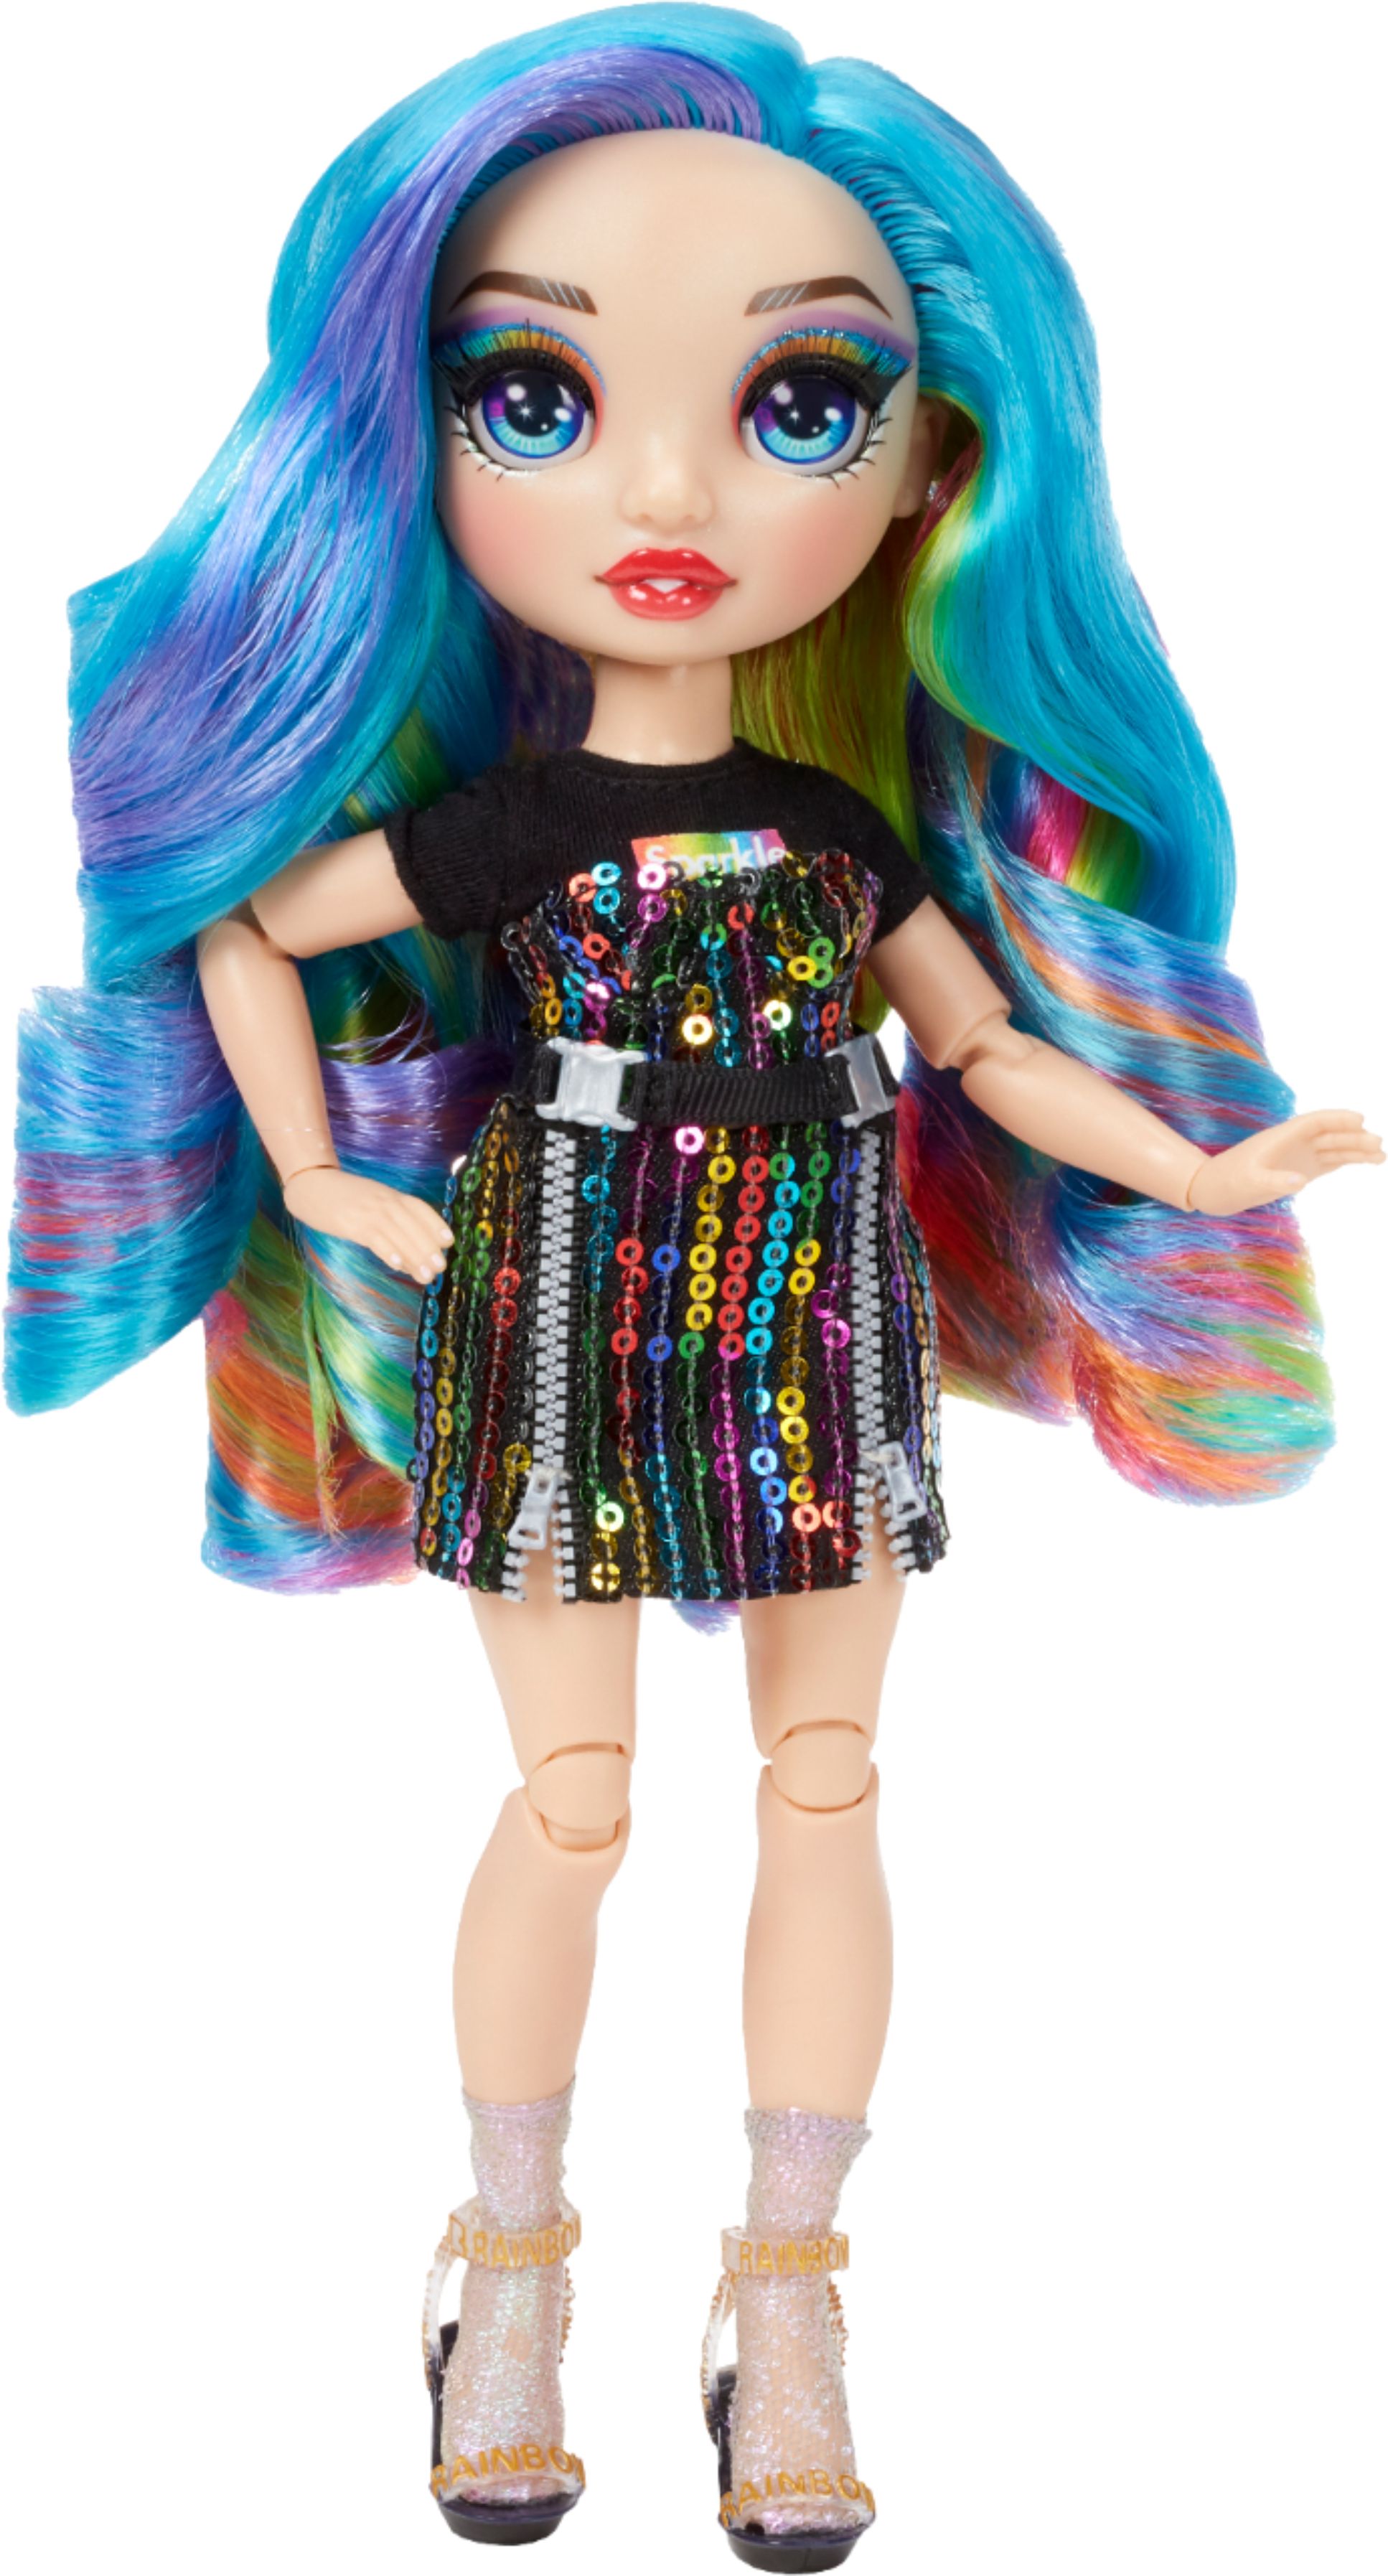 Lol Rainbow High Fashion Dolls, Rainbow High Surprise Dolls